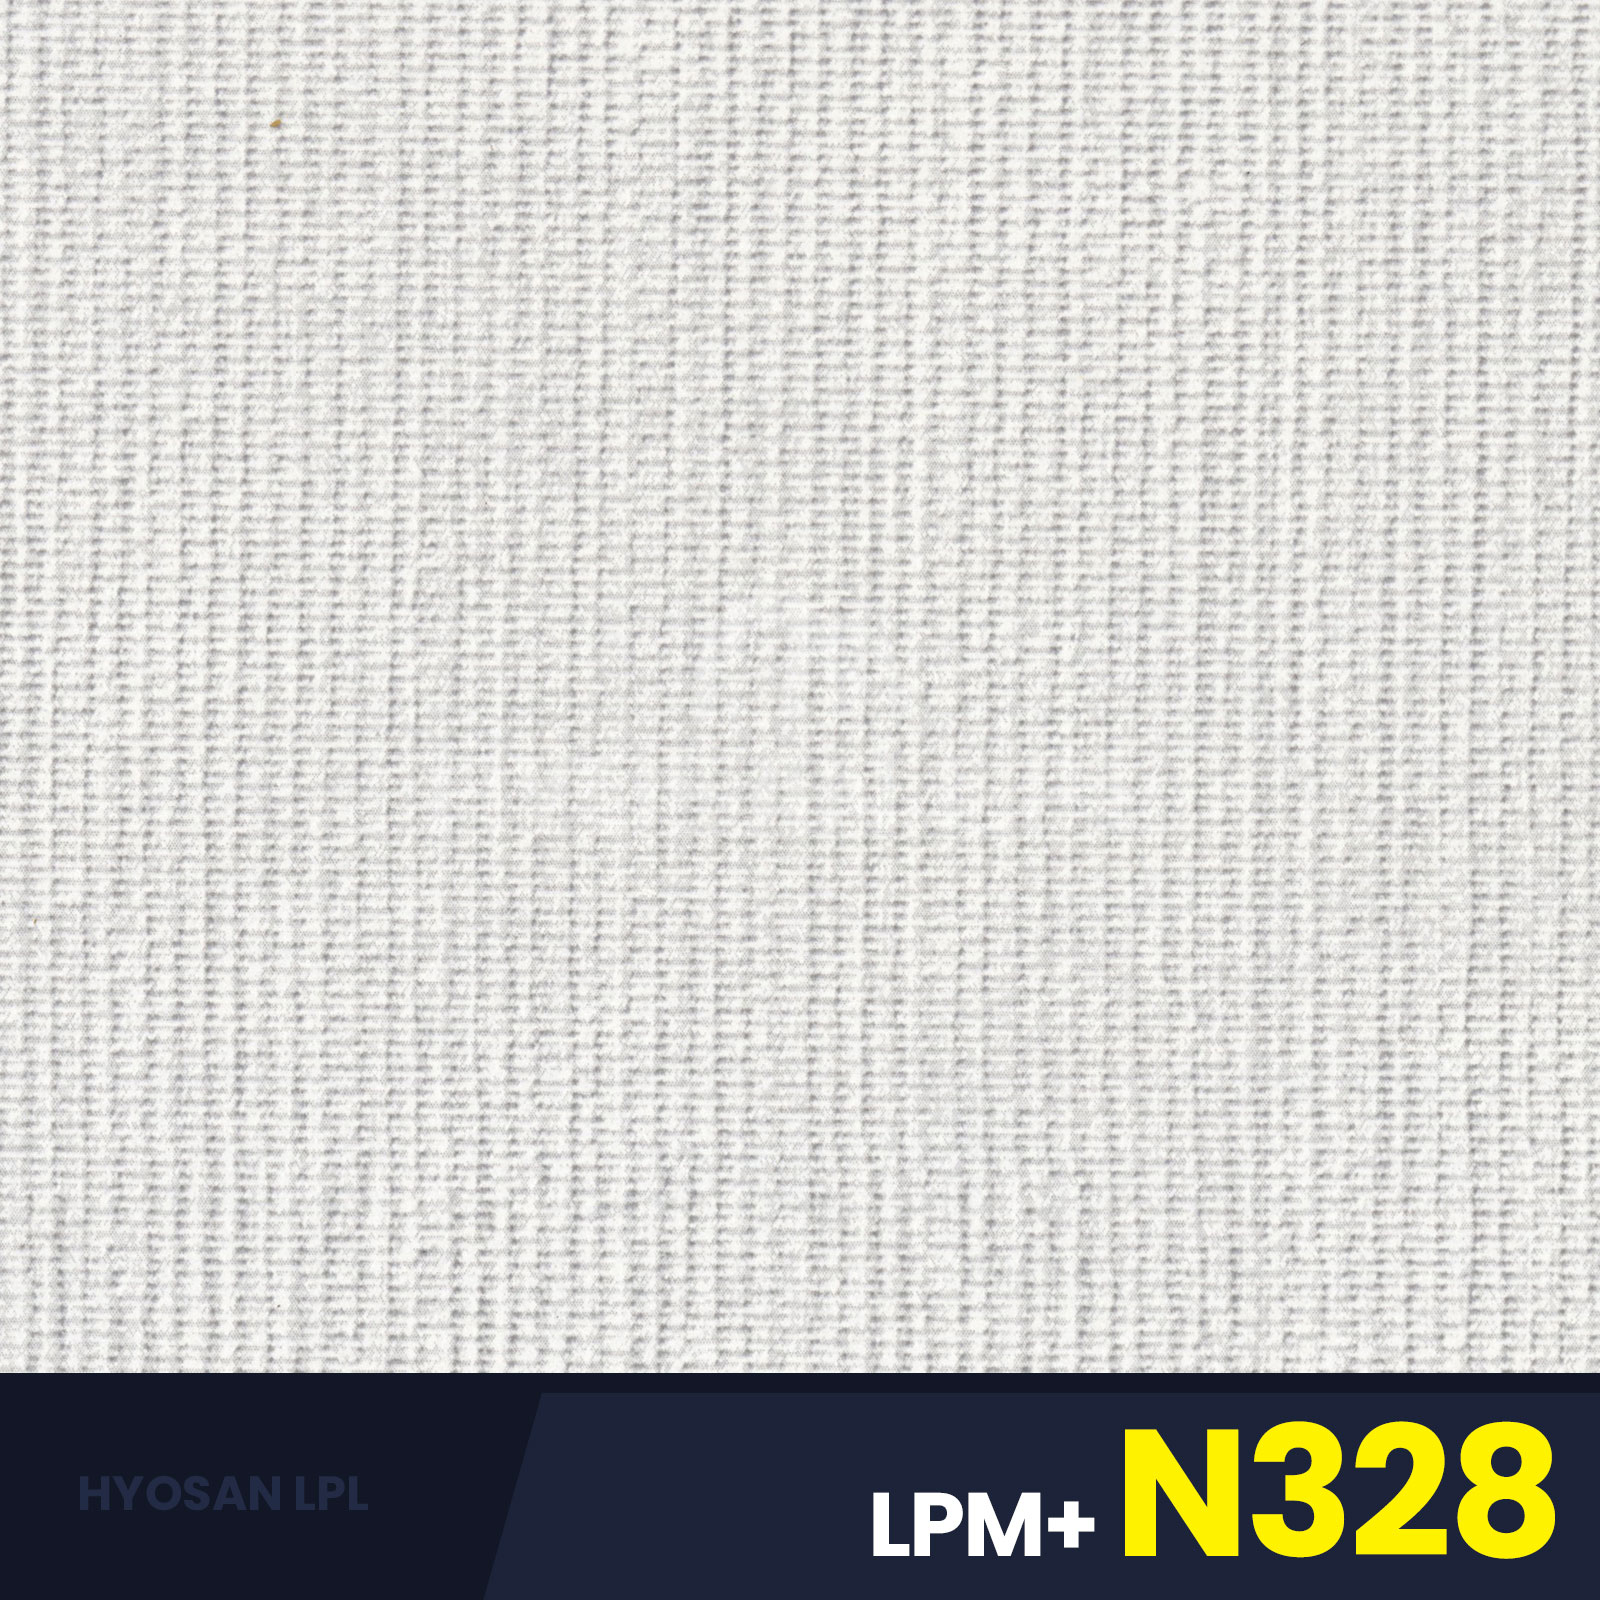 LPM+N328